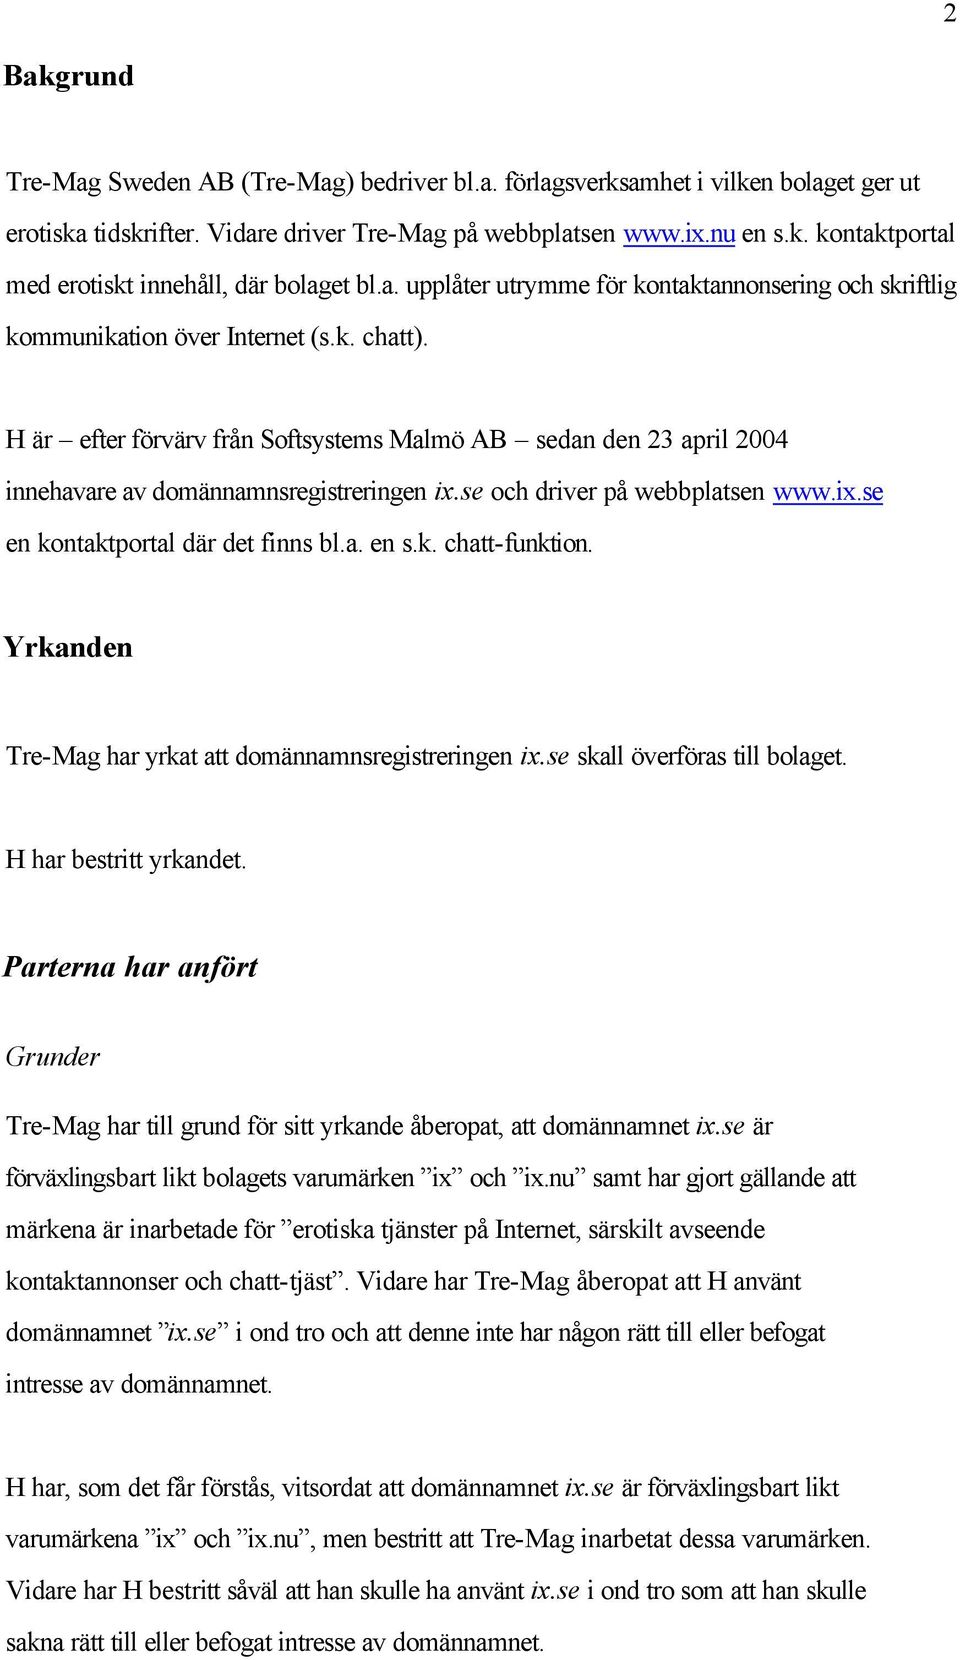 H är efter förvärv från Softsystems Malmö AB sedan den 23 april 2004 innehavare av domännamnsregistreringen ix.se och driver på webbplatsen www.ix.se en kontaktportal där det finns bl.a. en s.k. chatt-funktion.